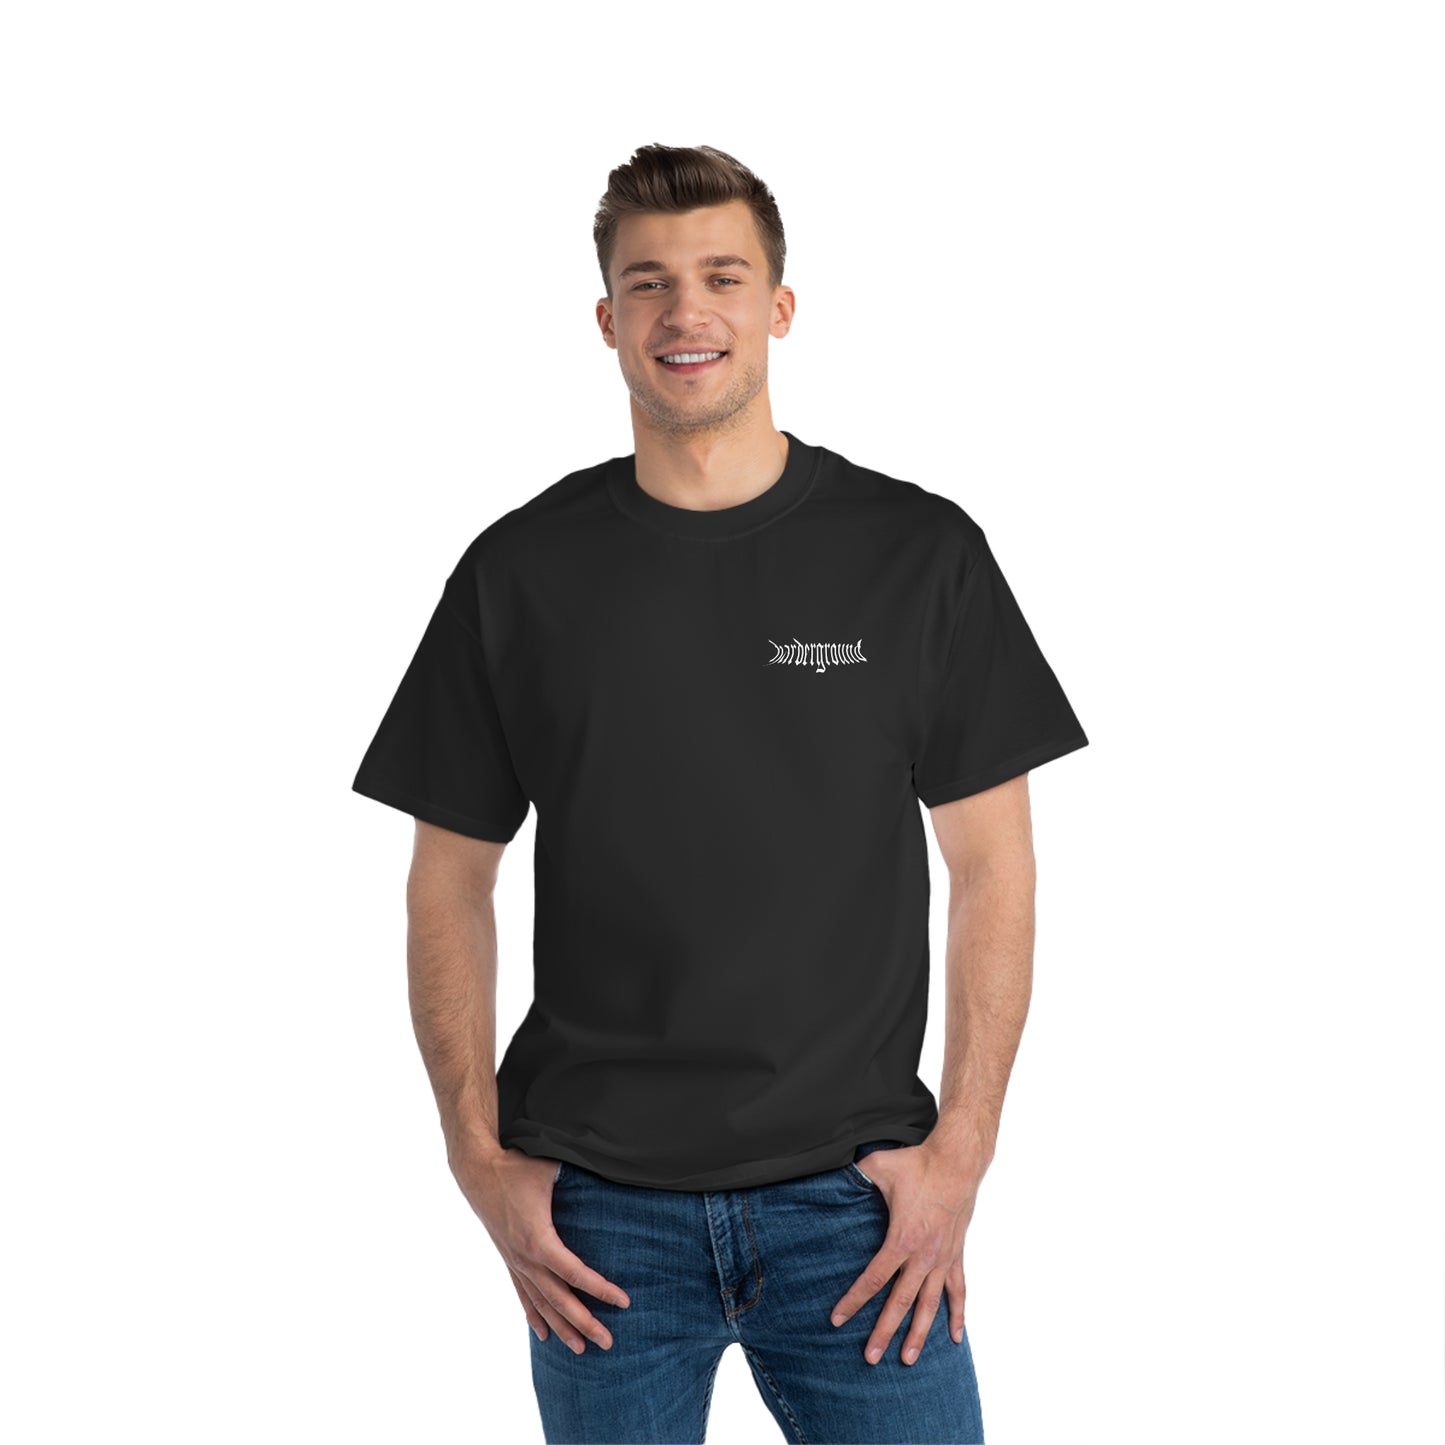 HARDERGROUND - Front & back logo - Beefy-T®  Short-Sleeve T-Shirt